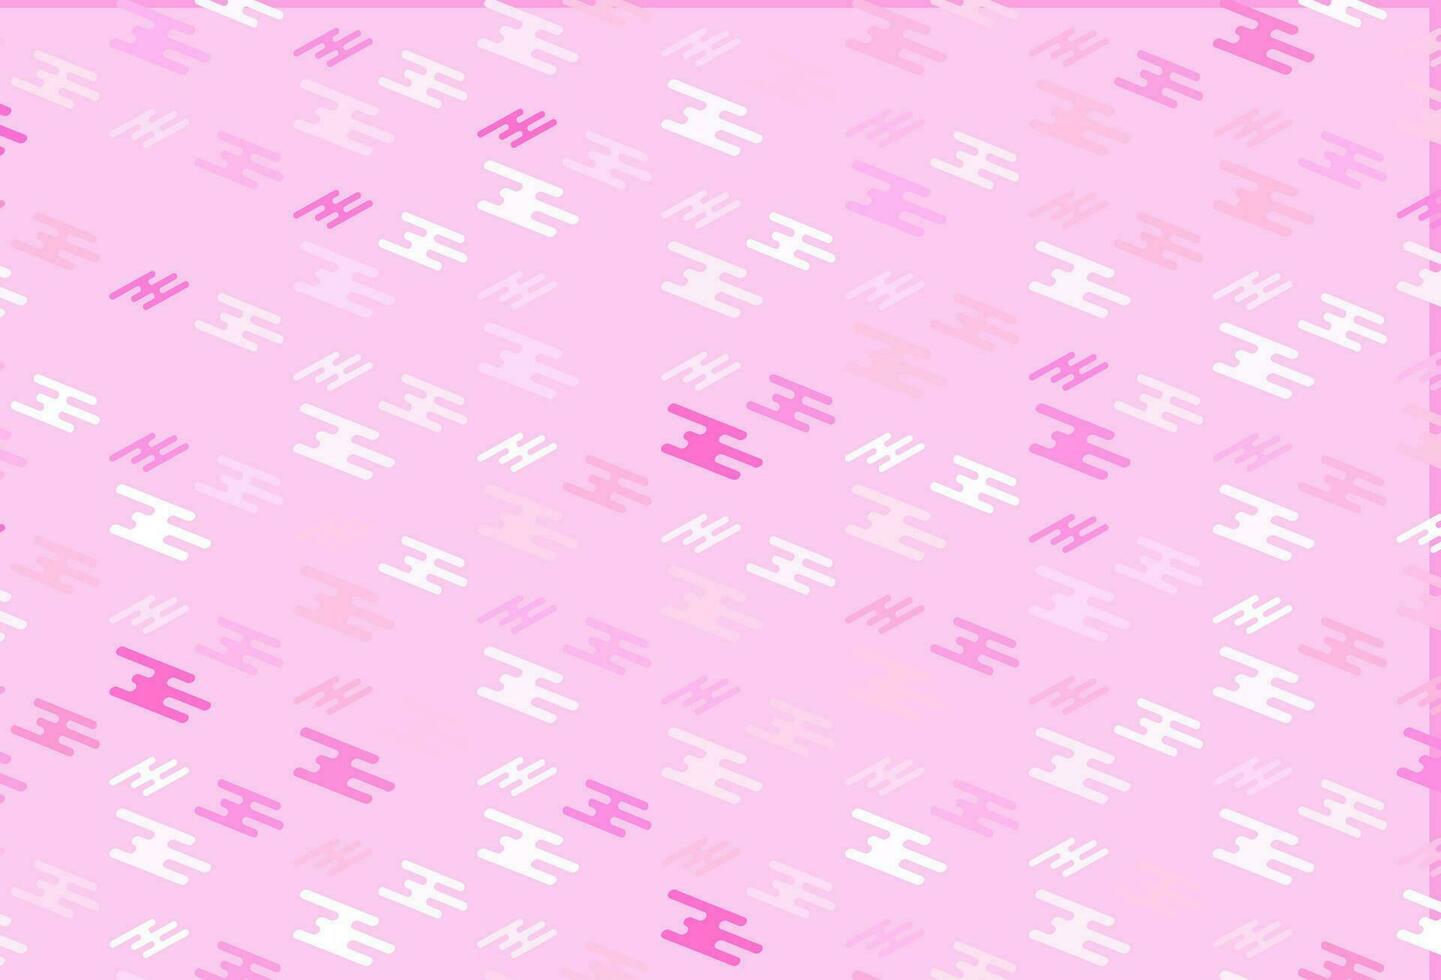 trama vettoriale rosa chiaro con linee colorate.